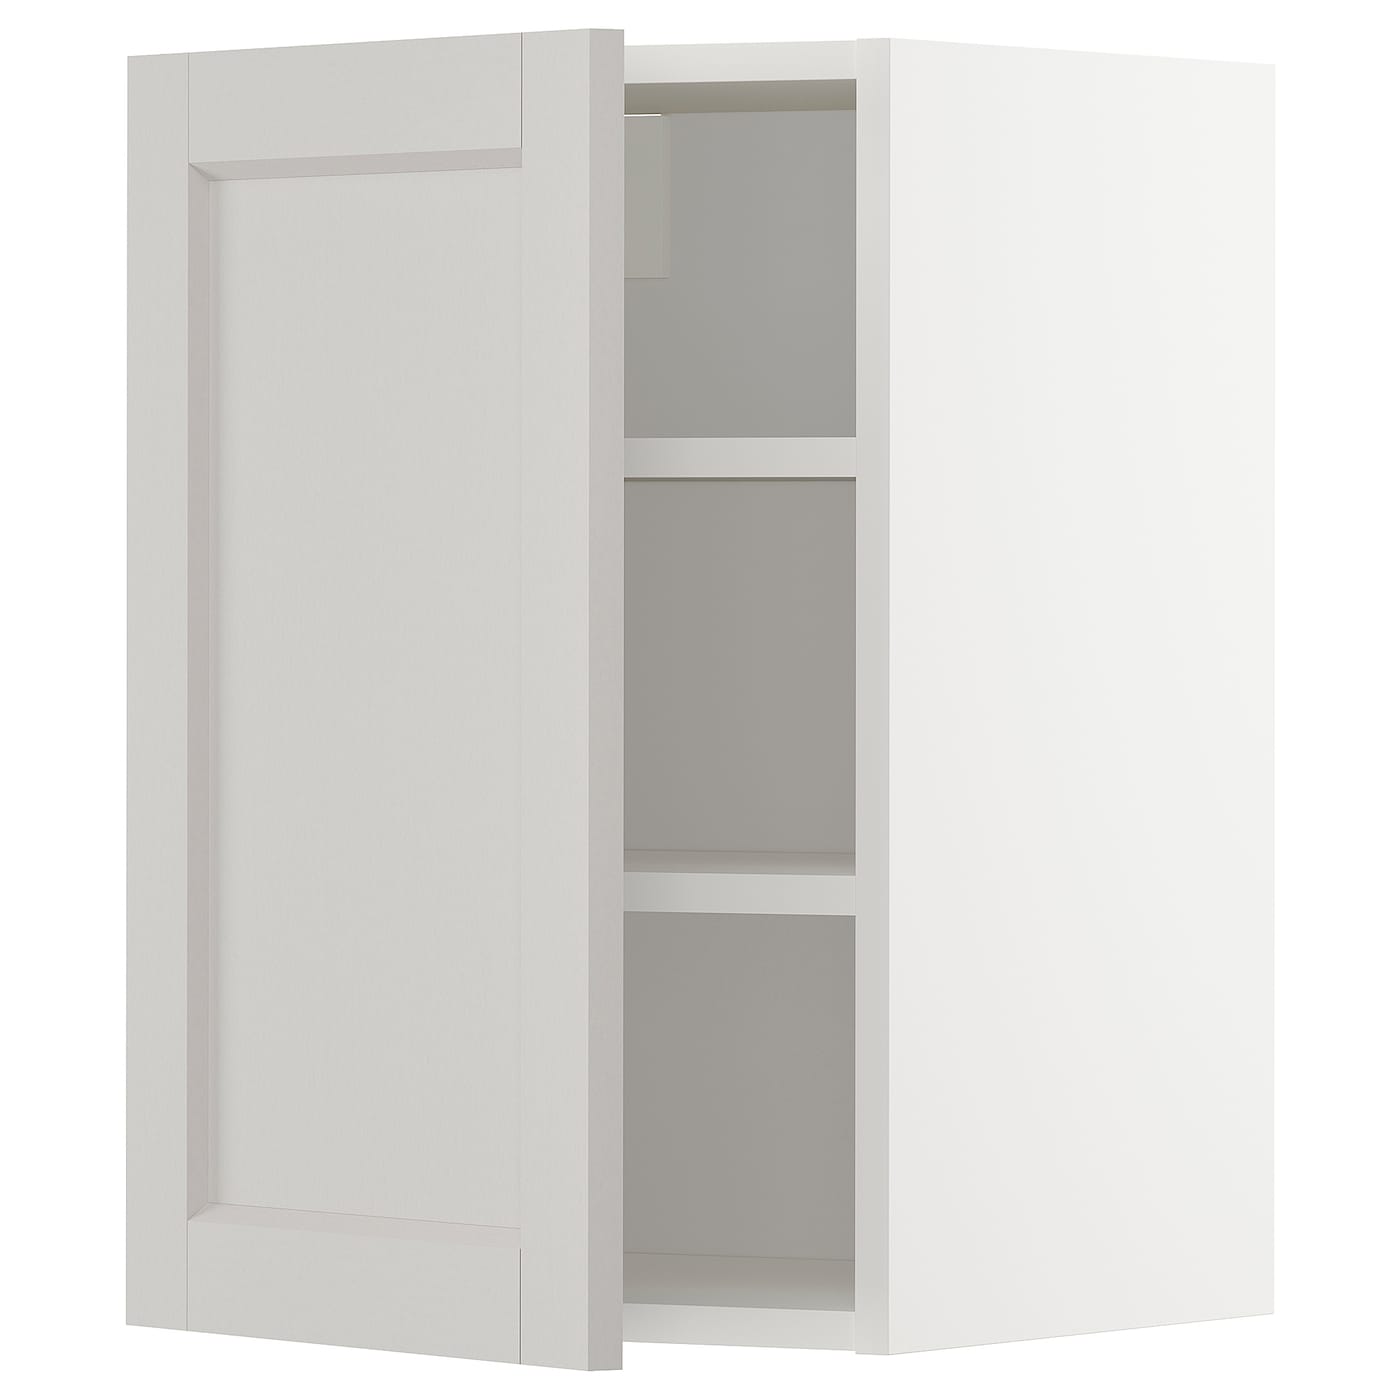 Навесной шкаф с полкой - METOD IKEA/ МЕТОД ИКЕА, 40х60 см, белый/светло-серый